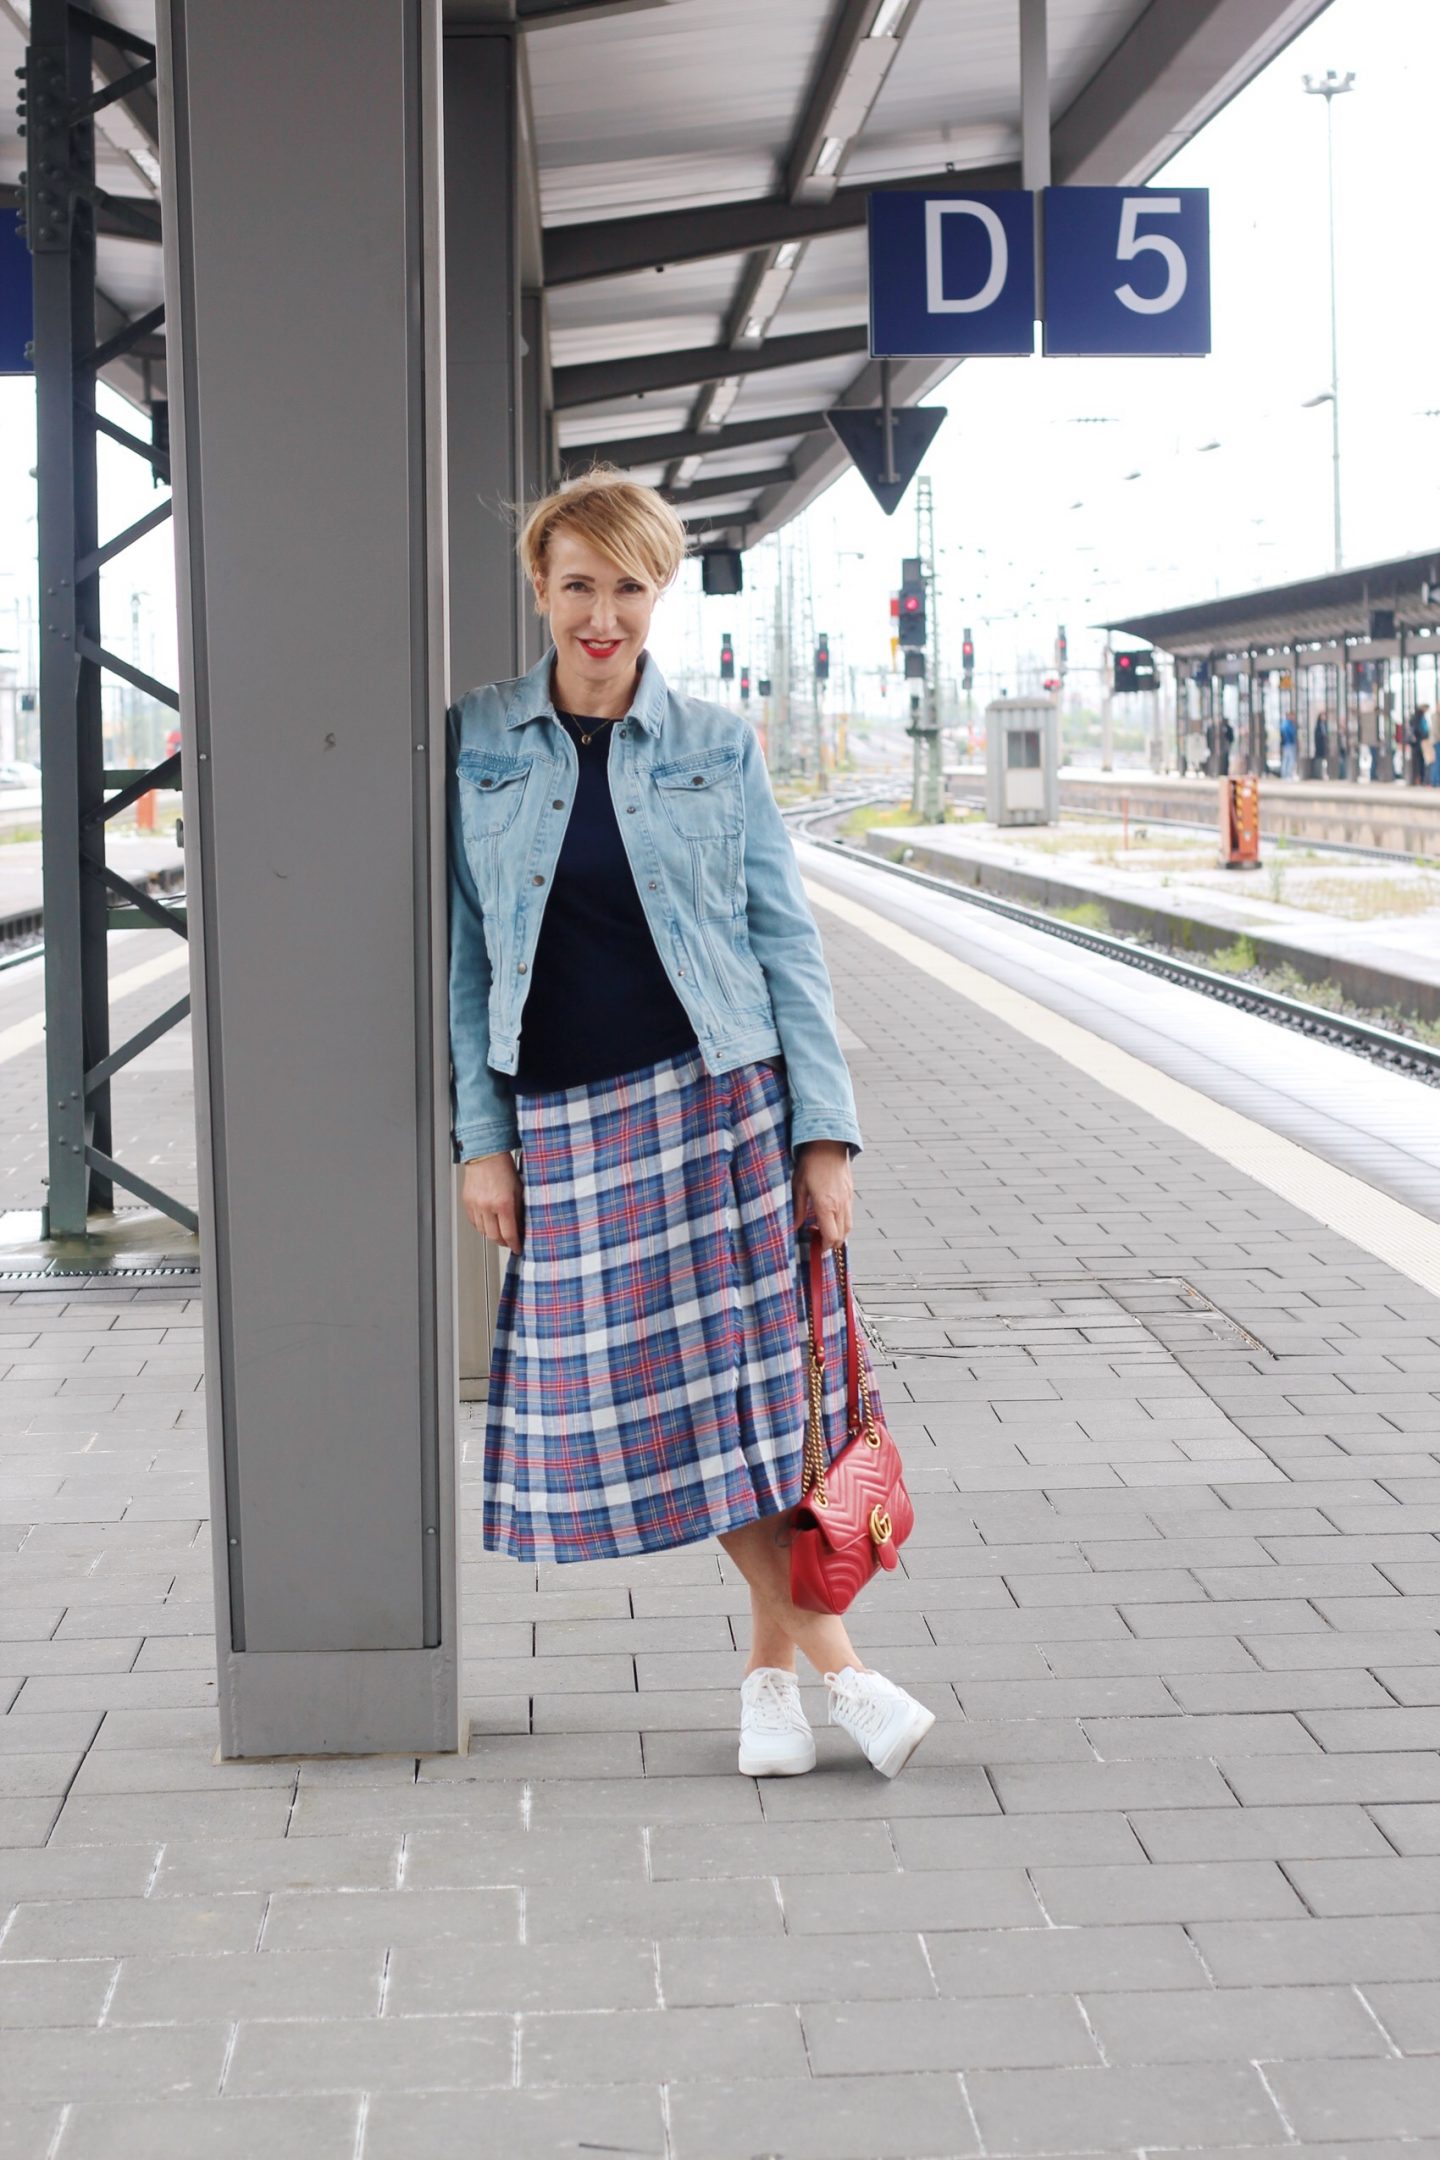 Die Jeansjacke als ideale Jacke für Unterwegs - Outfitidee mit Kilt und Pullover für Frauen Ü40 Ü50